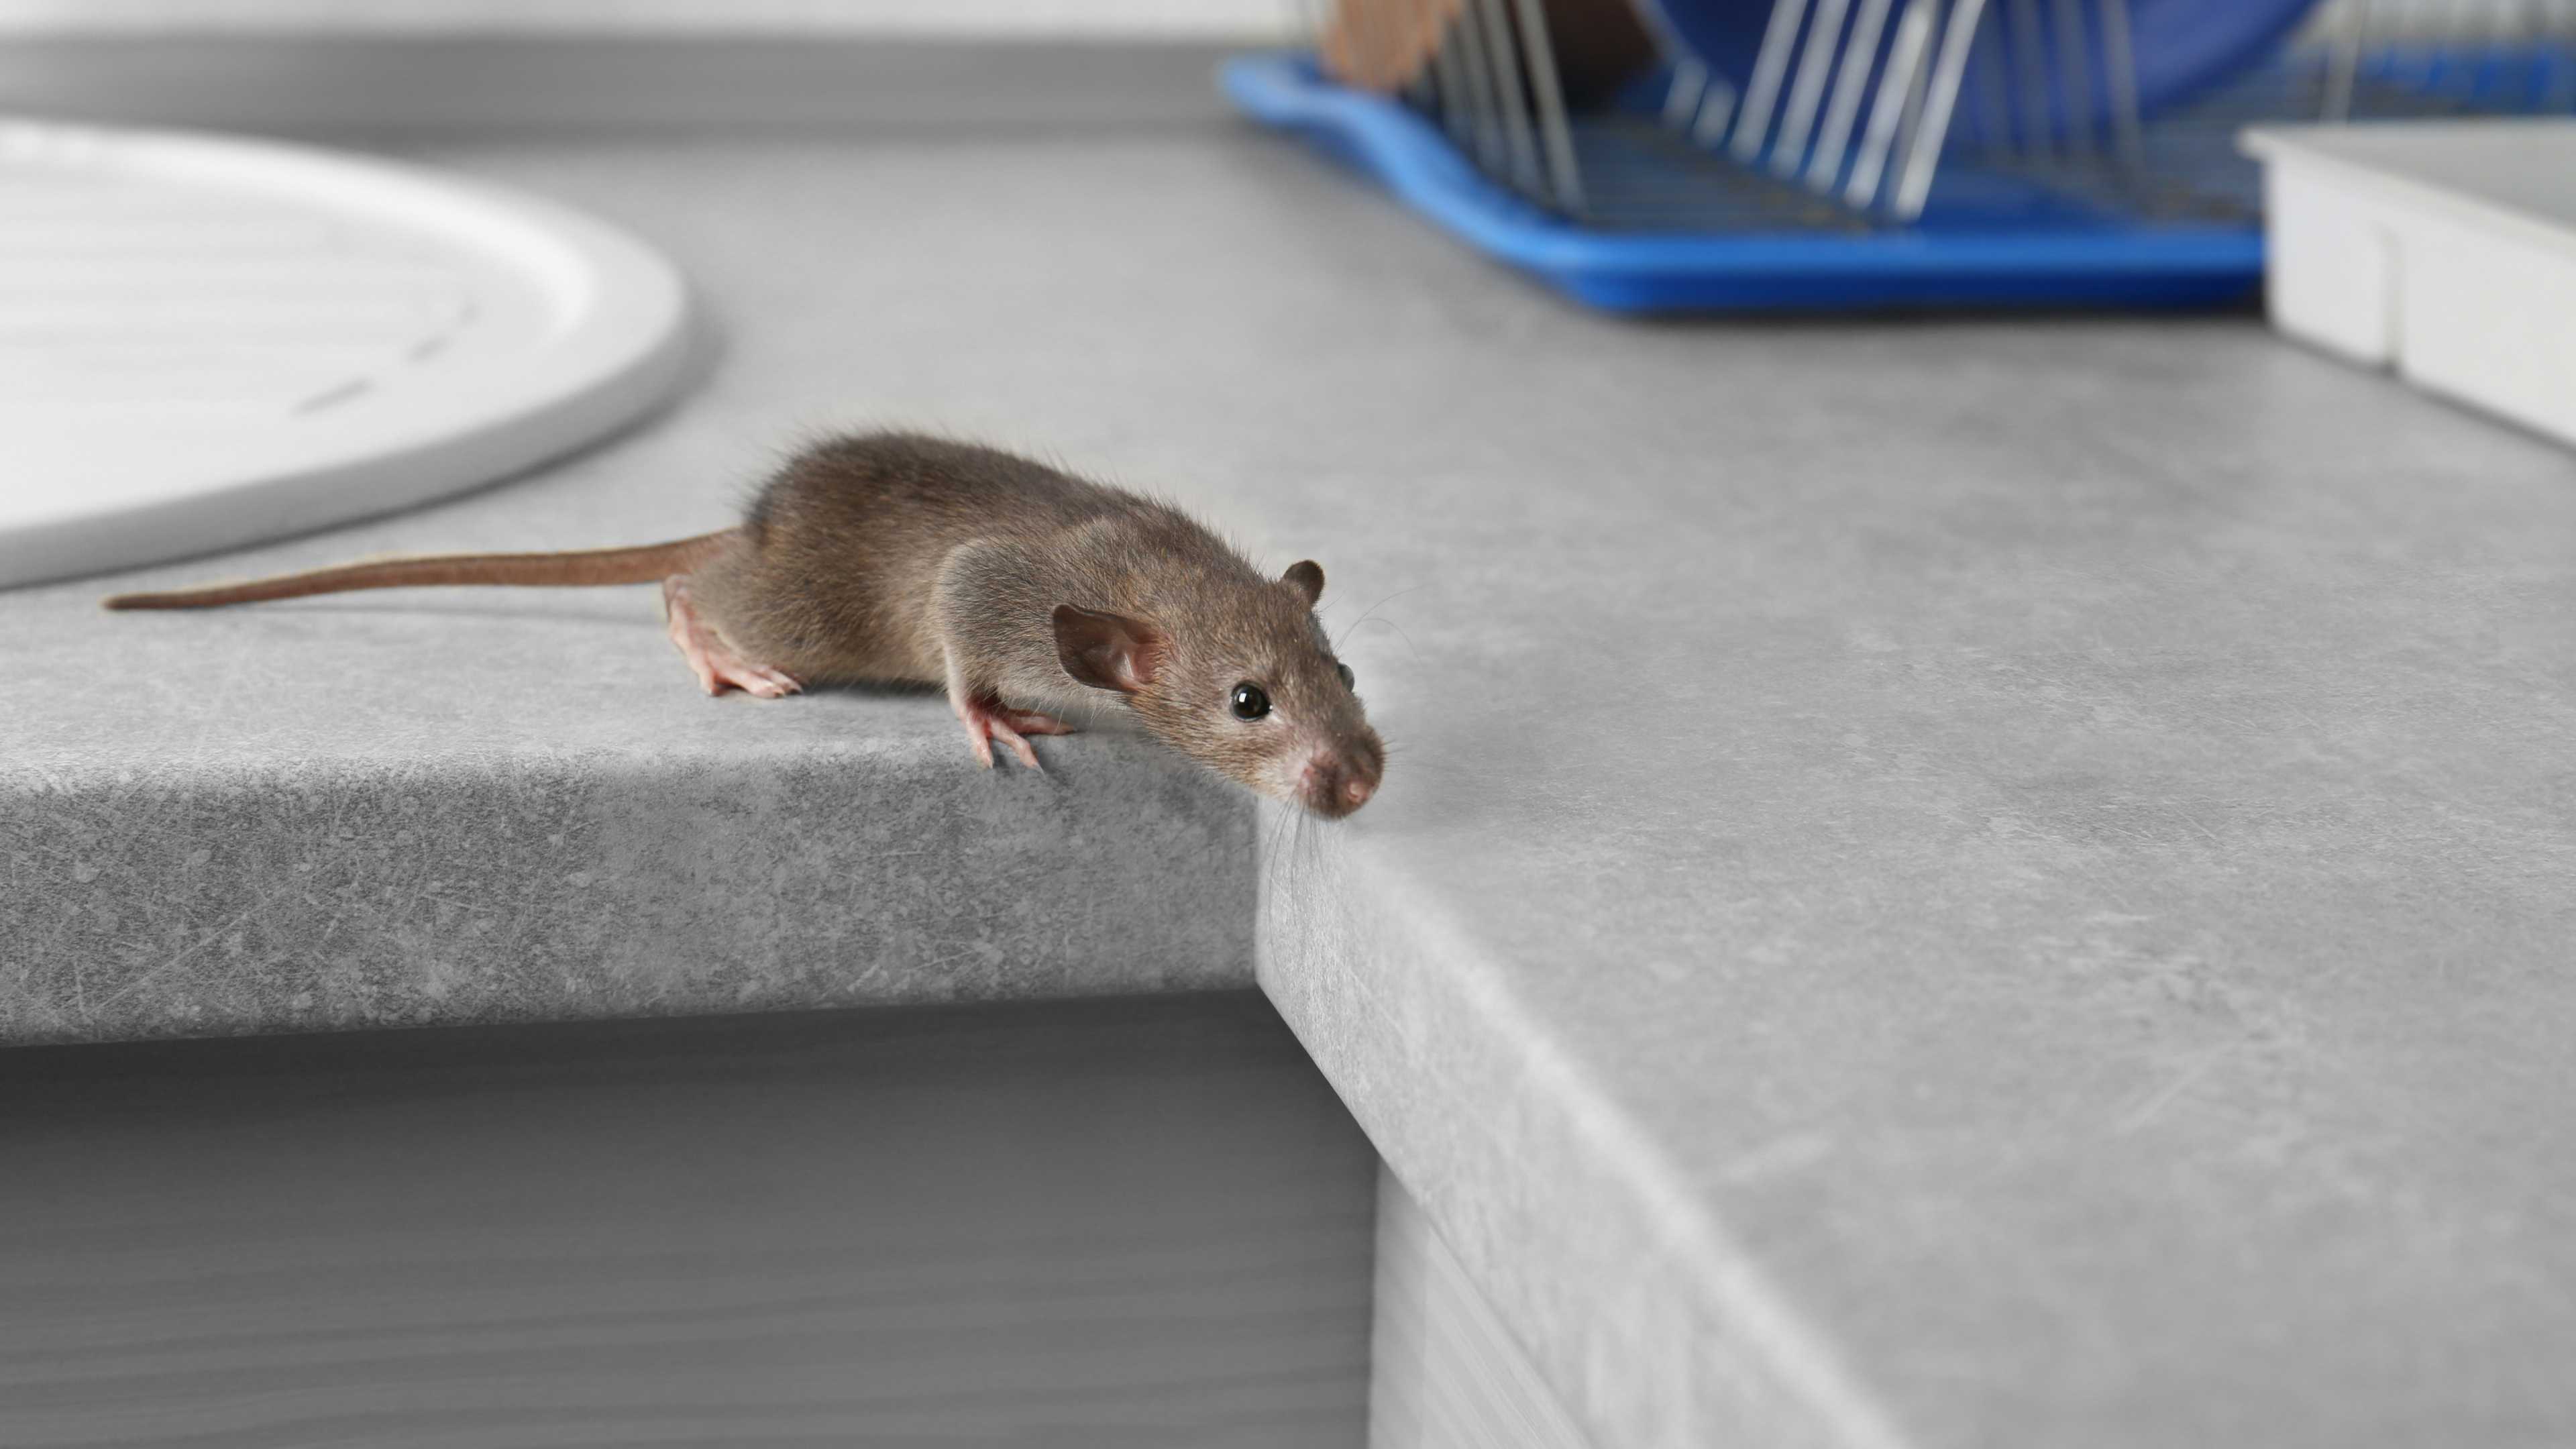 Целеустремленность у крыс с низким уровнем тревожности оказалась выше